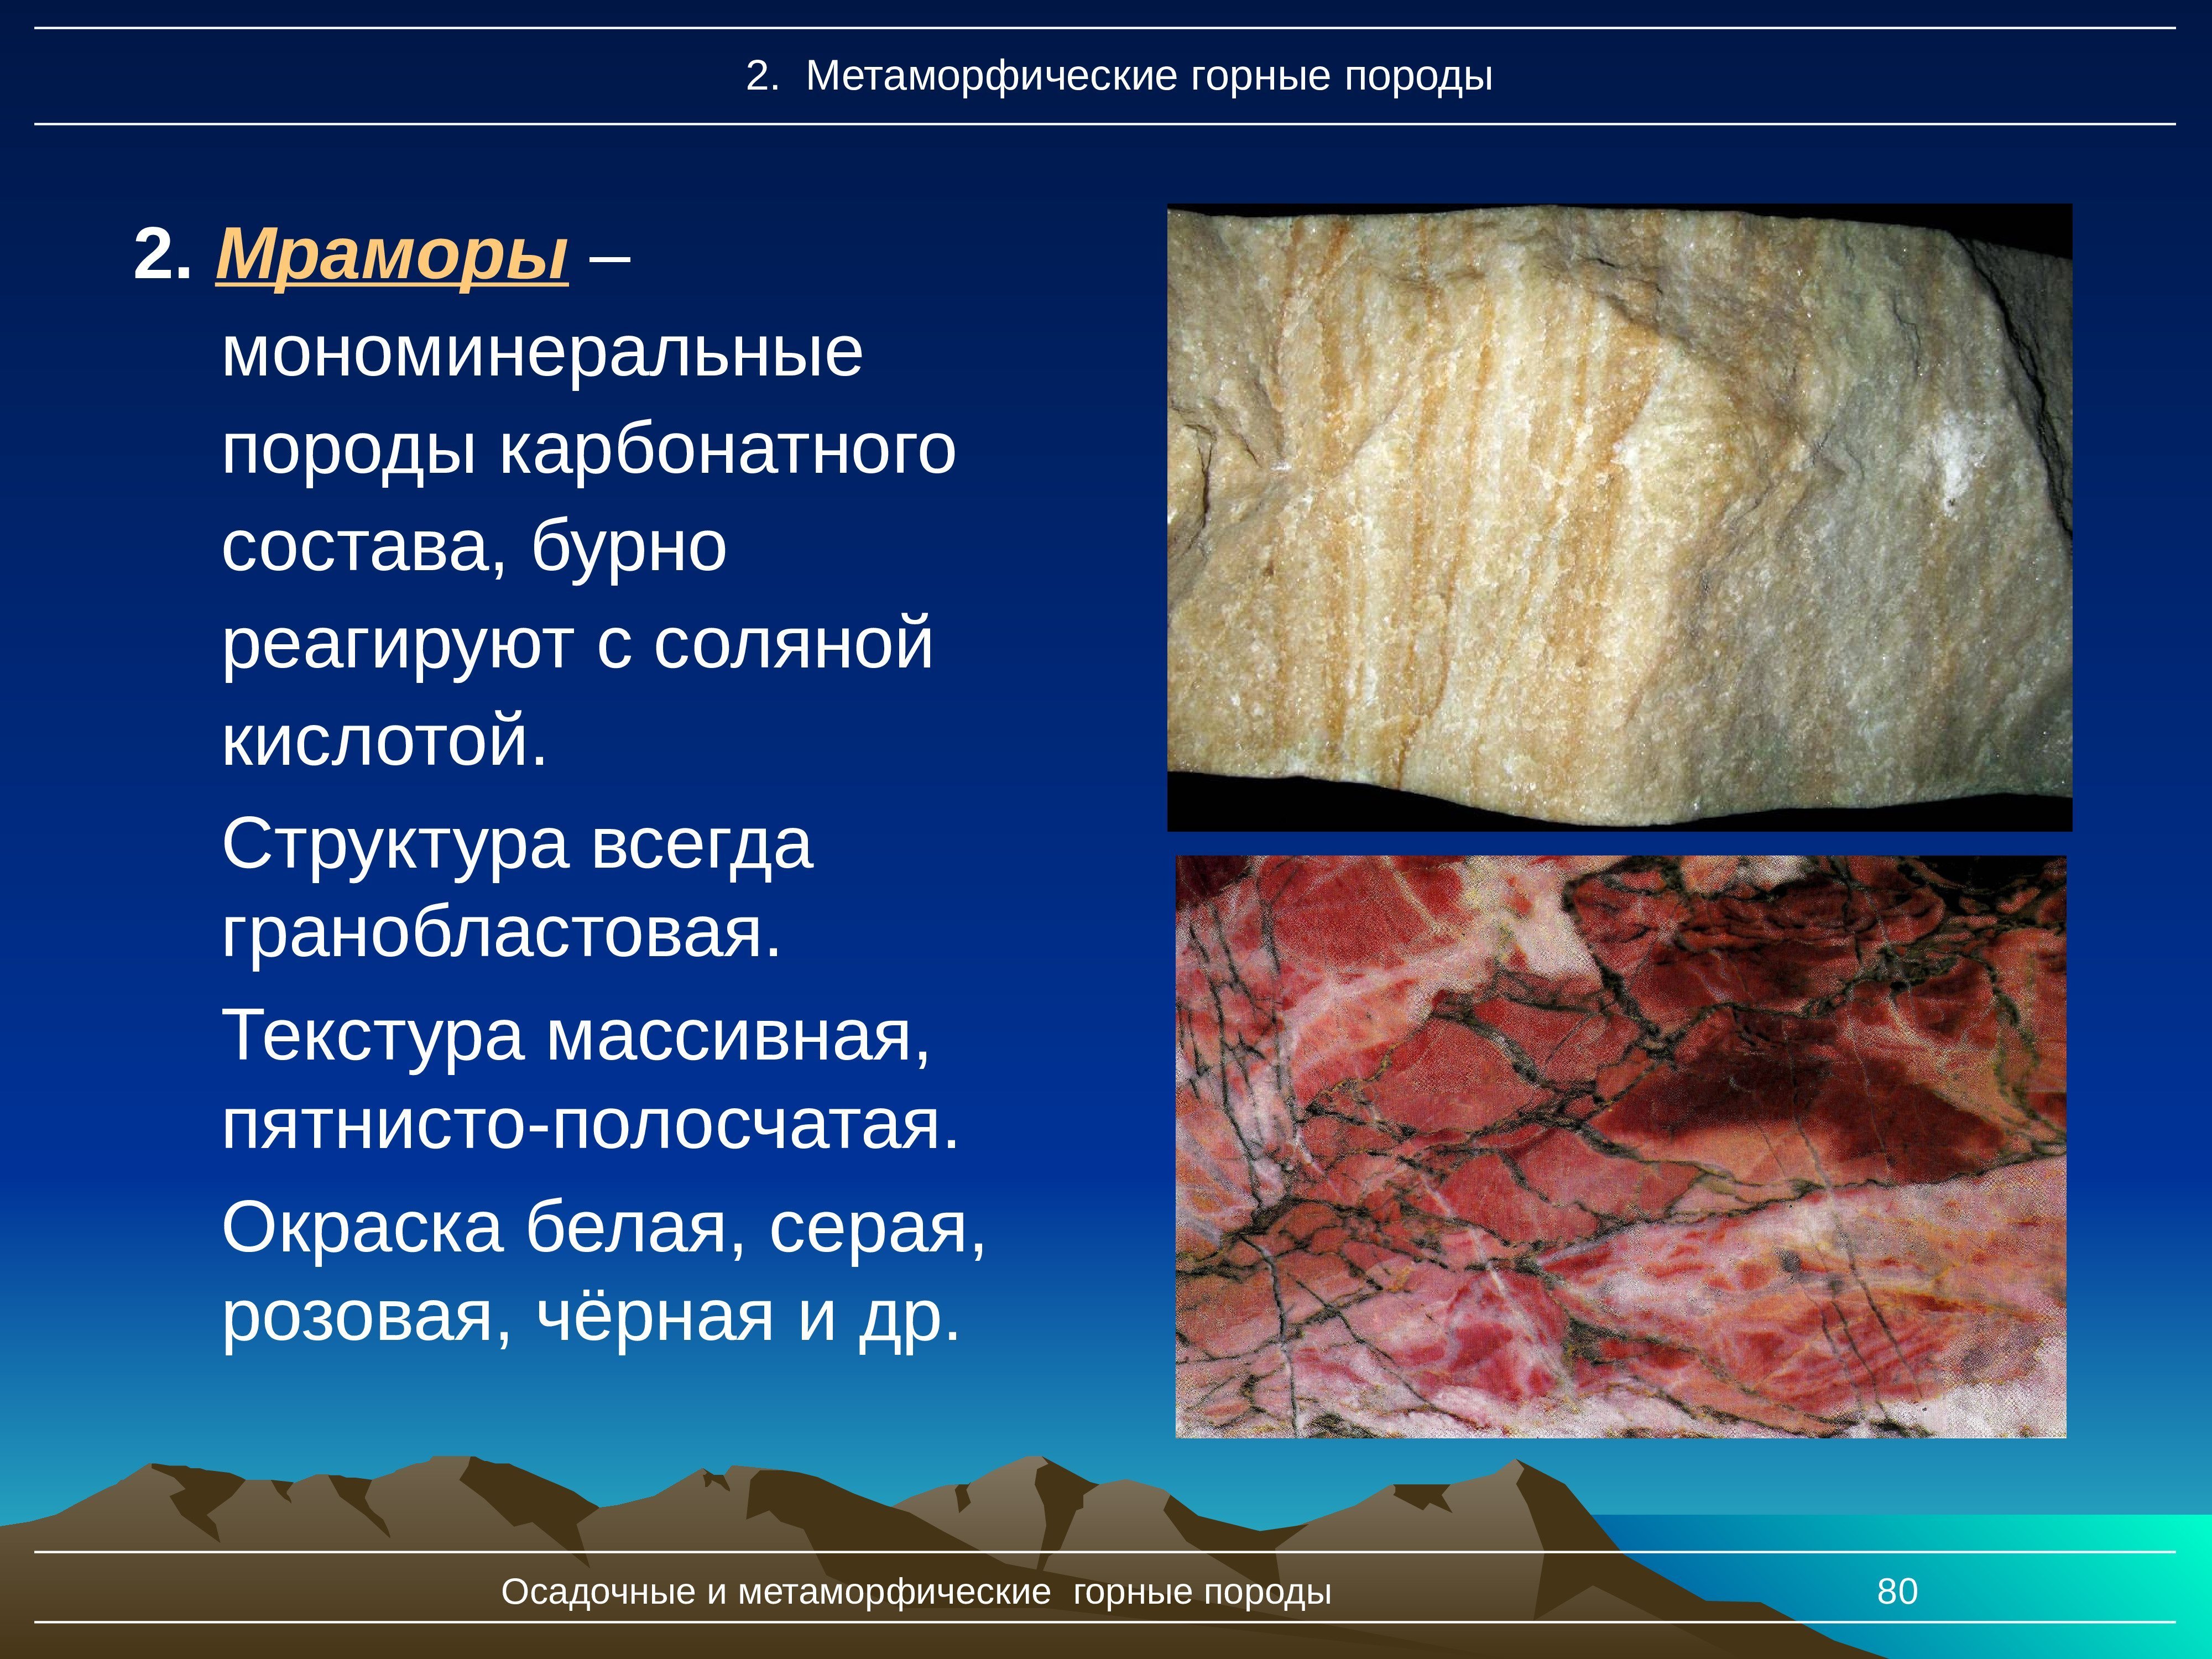 Метаморфические горные породы 5 класс география. Мрамор метаморфическая Горная порода. Мономинеральные метаморфические горные породы. Осадочные горные породы мрамор. Структура мрамора.